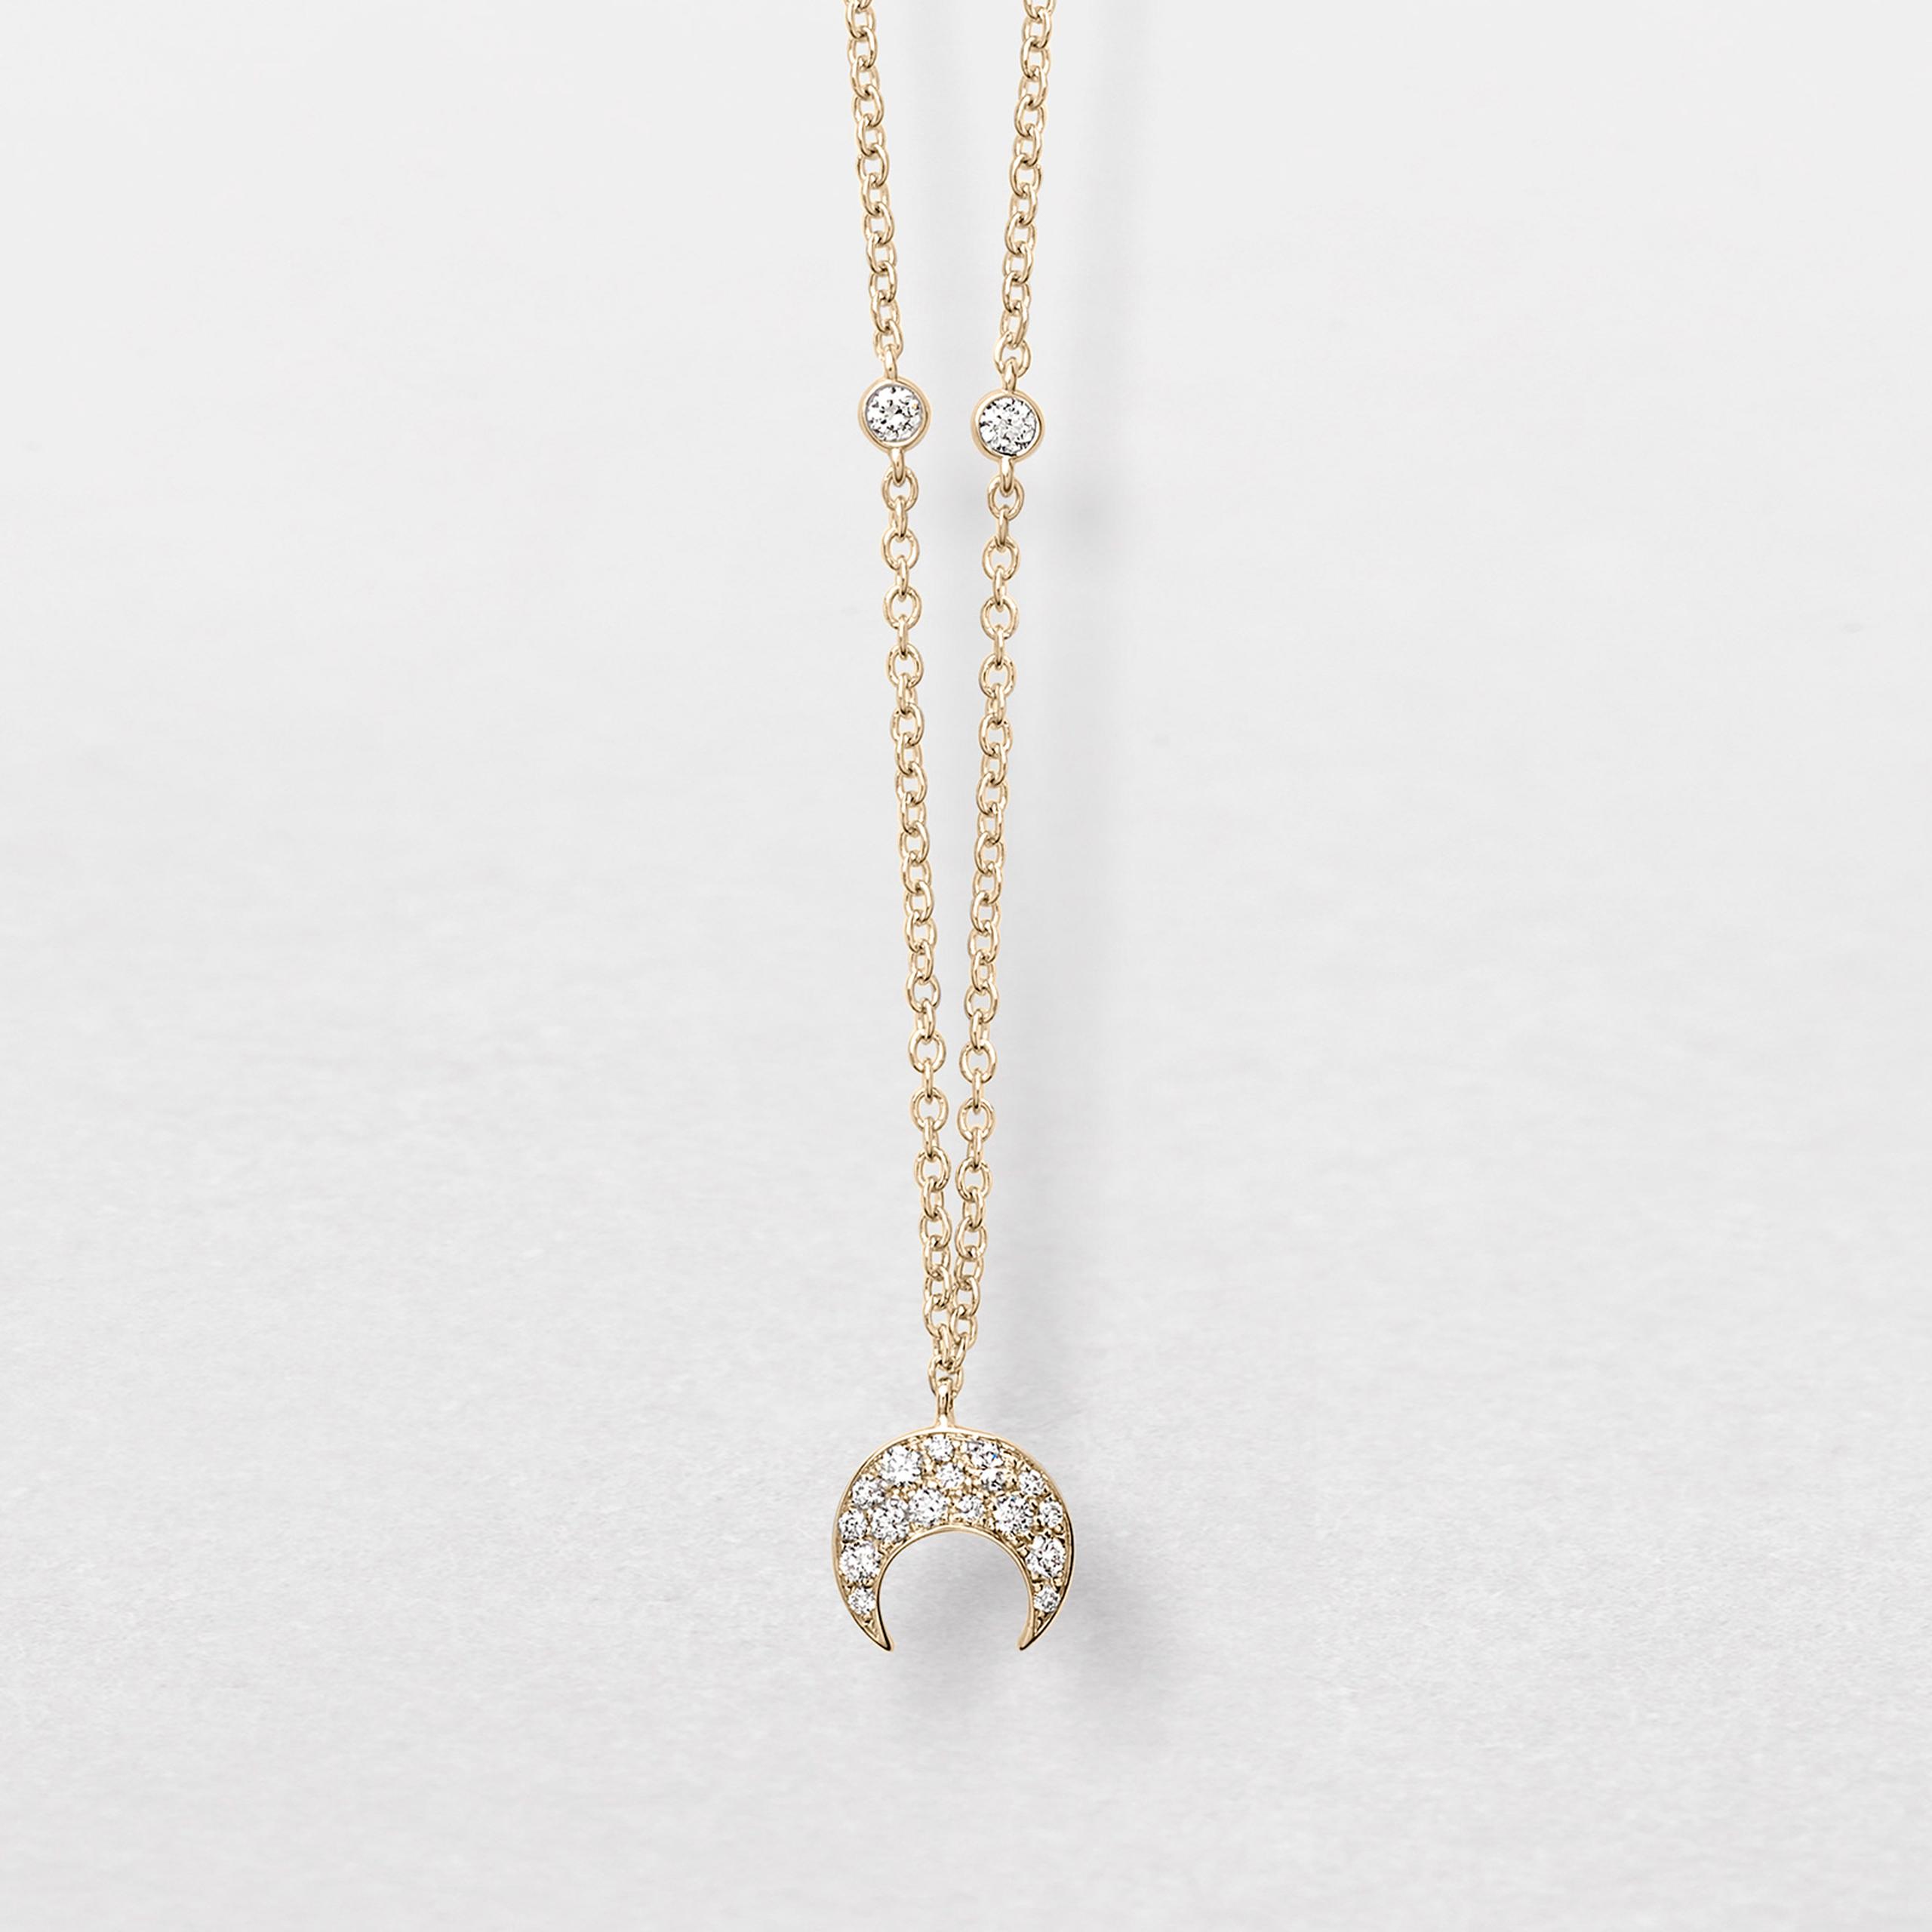 Añade un elemento de distinción a tu look con una espectacular cadena de Letran Jewelers. Visita la tienda en el primer nivel.